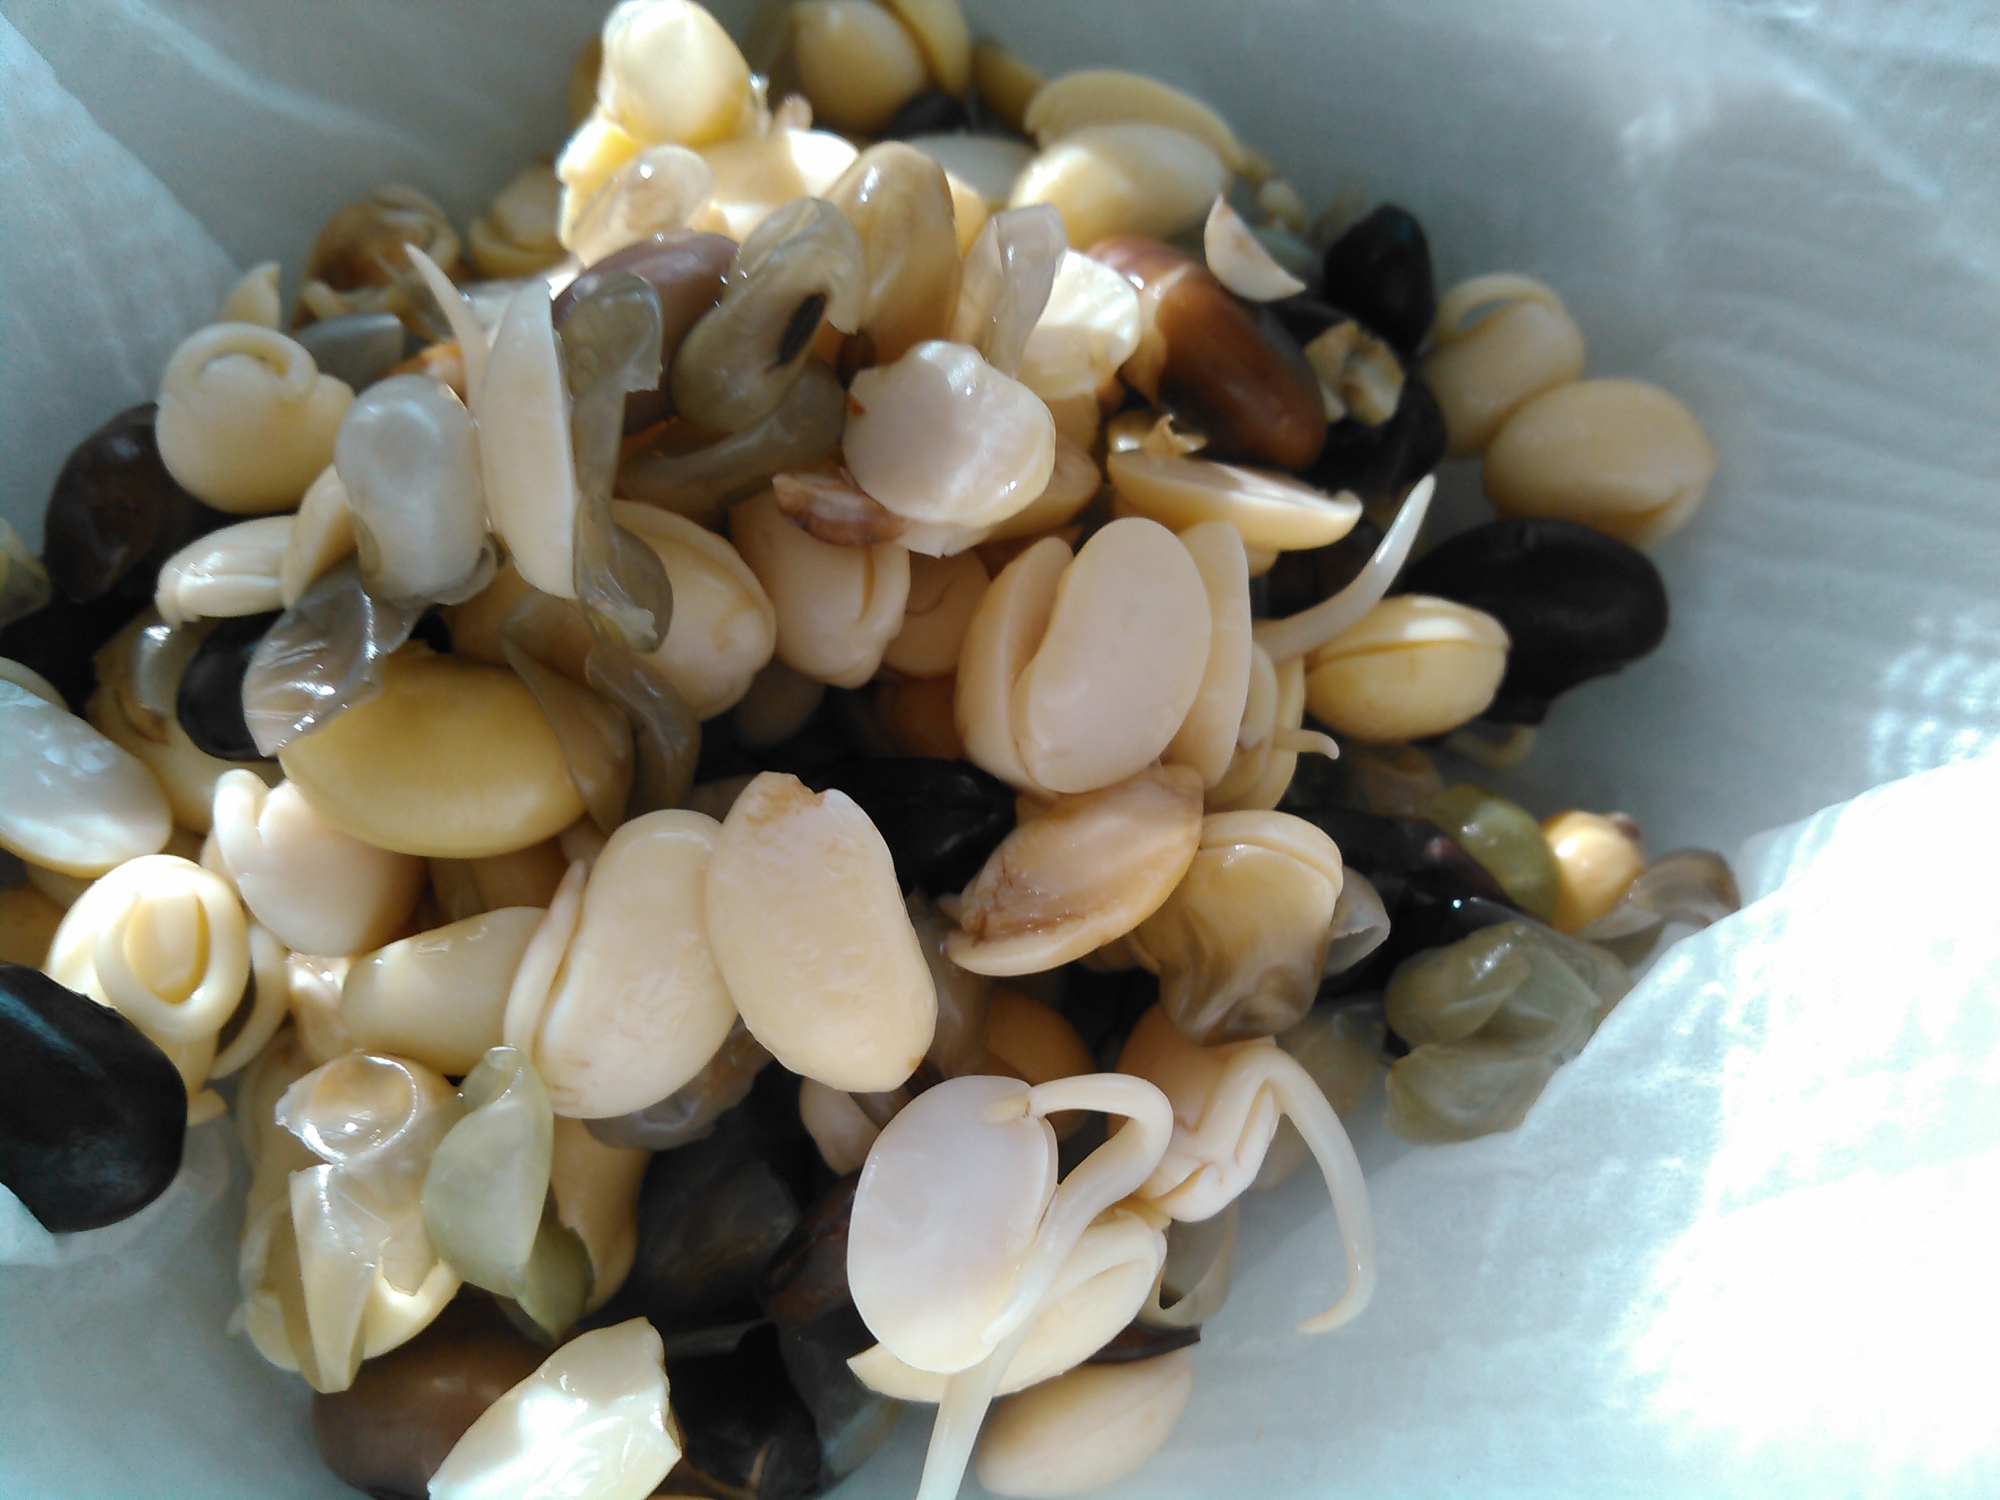 スナック感覚で食べられる味付け発芽大豆